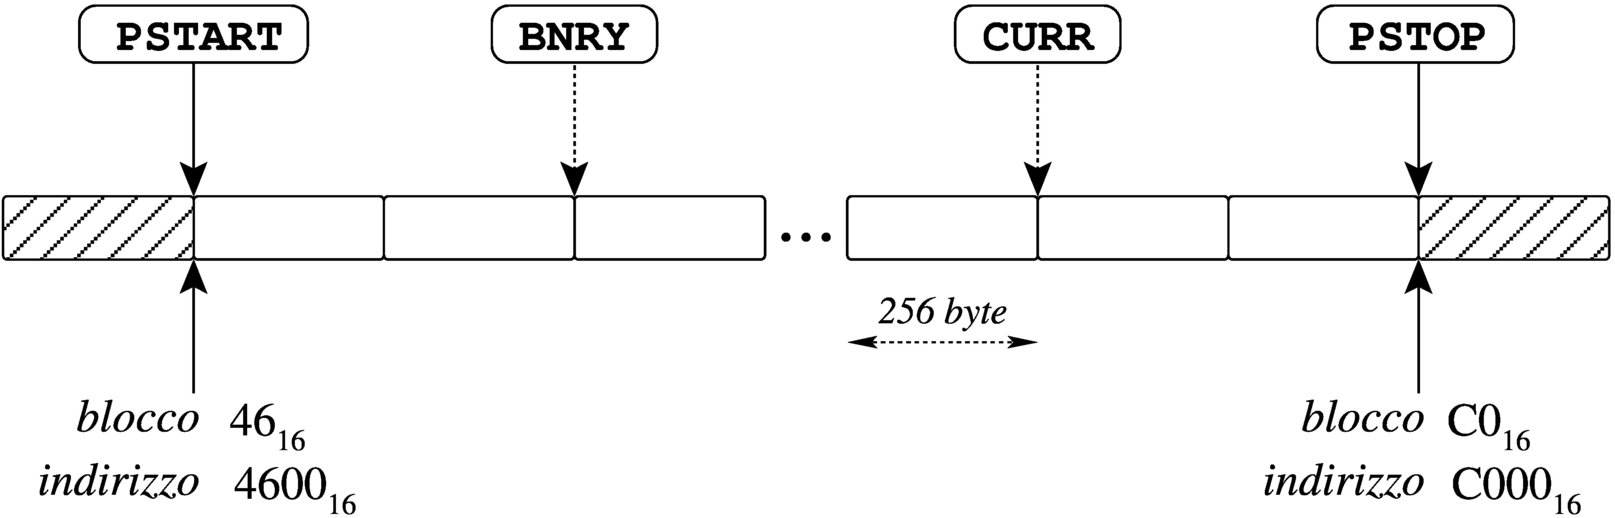 NE2000: esempio di coda di ricezione, da 46 a BF